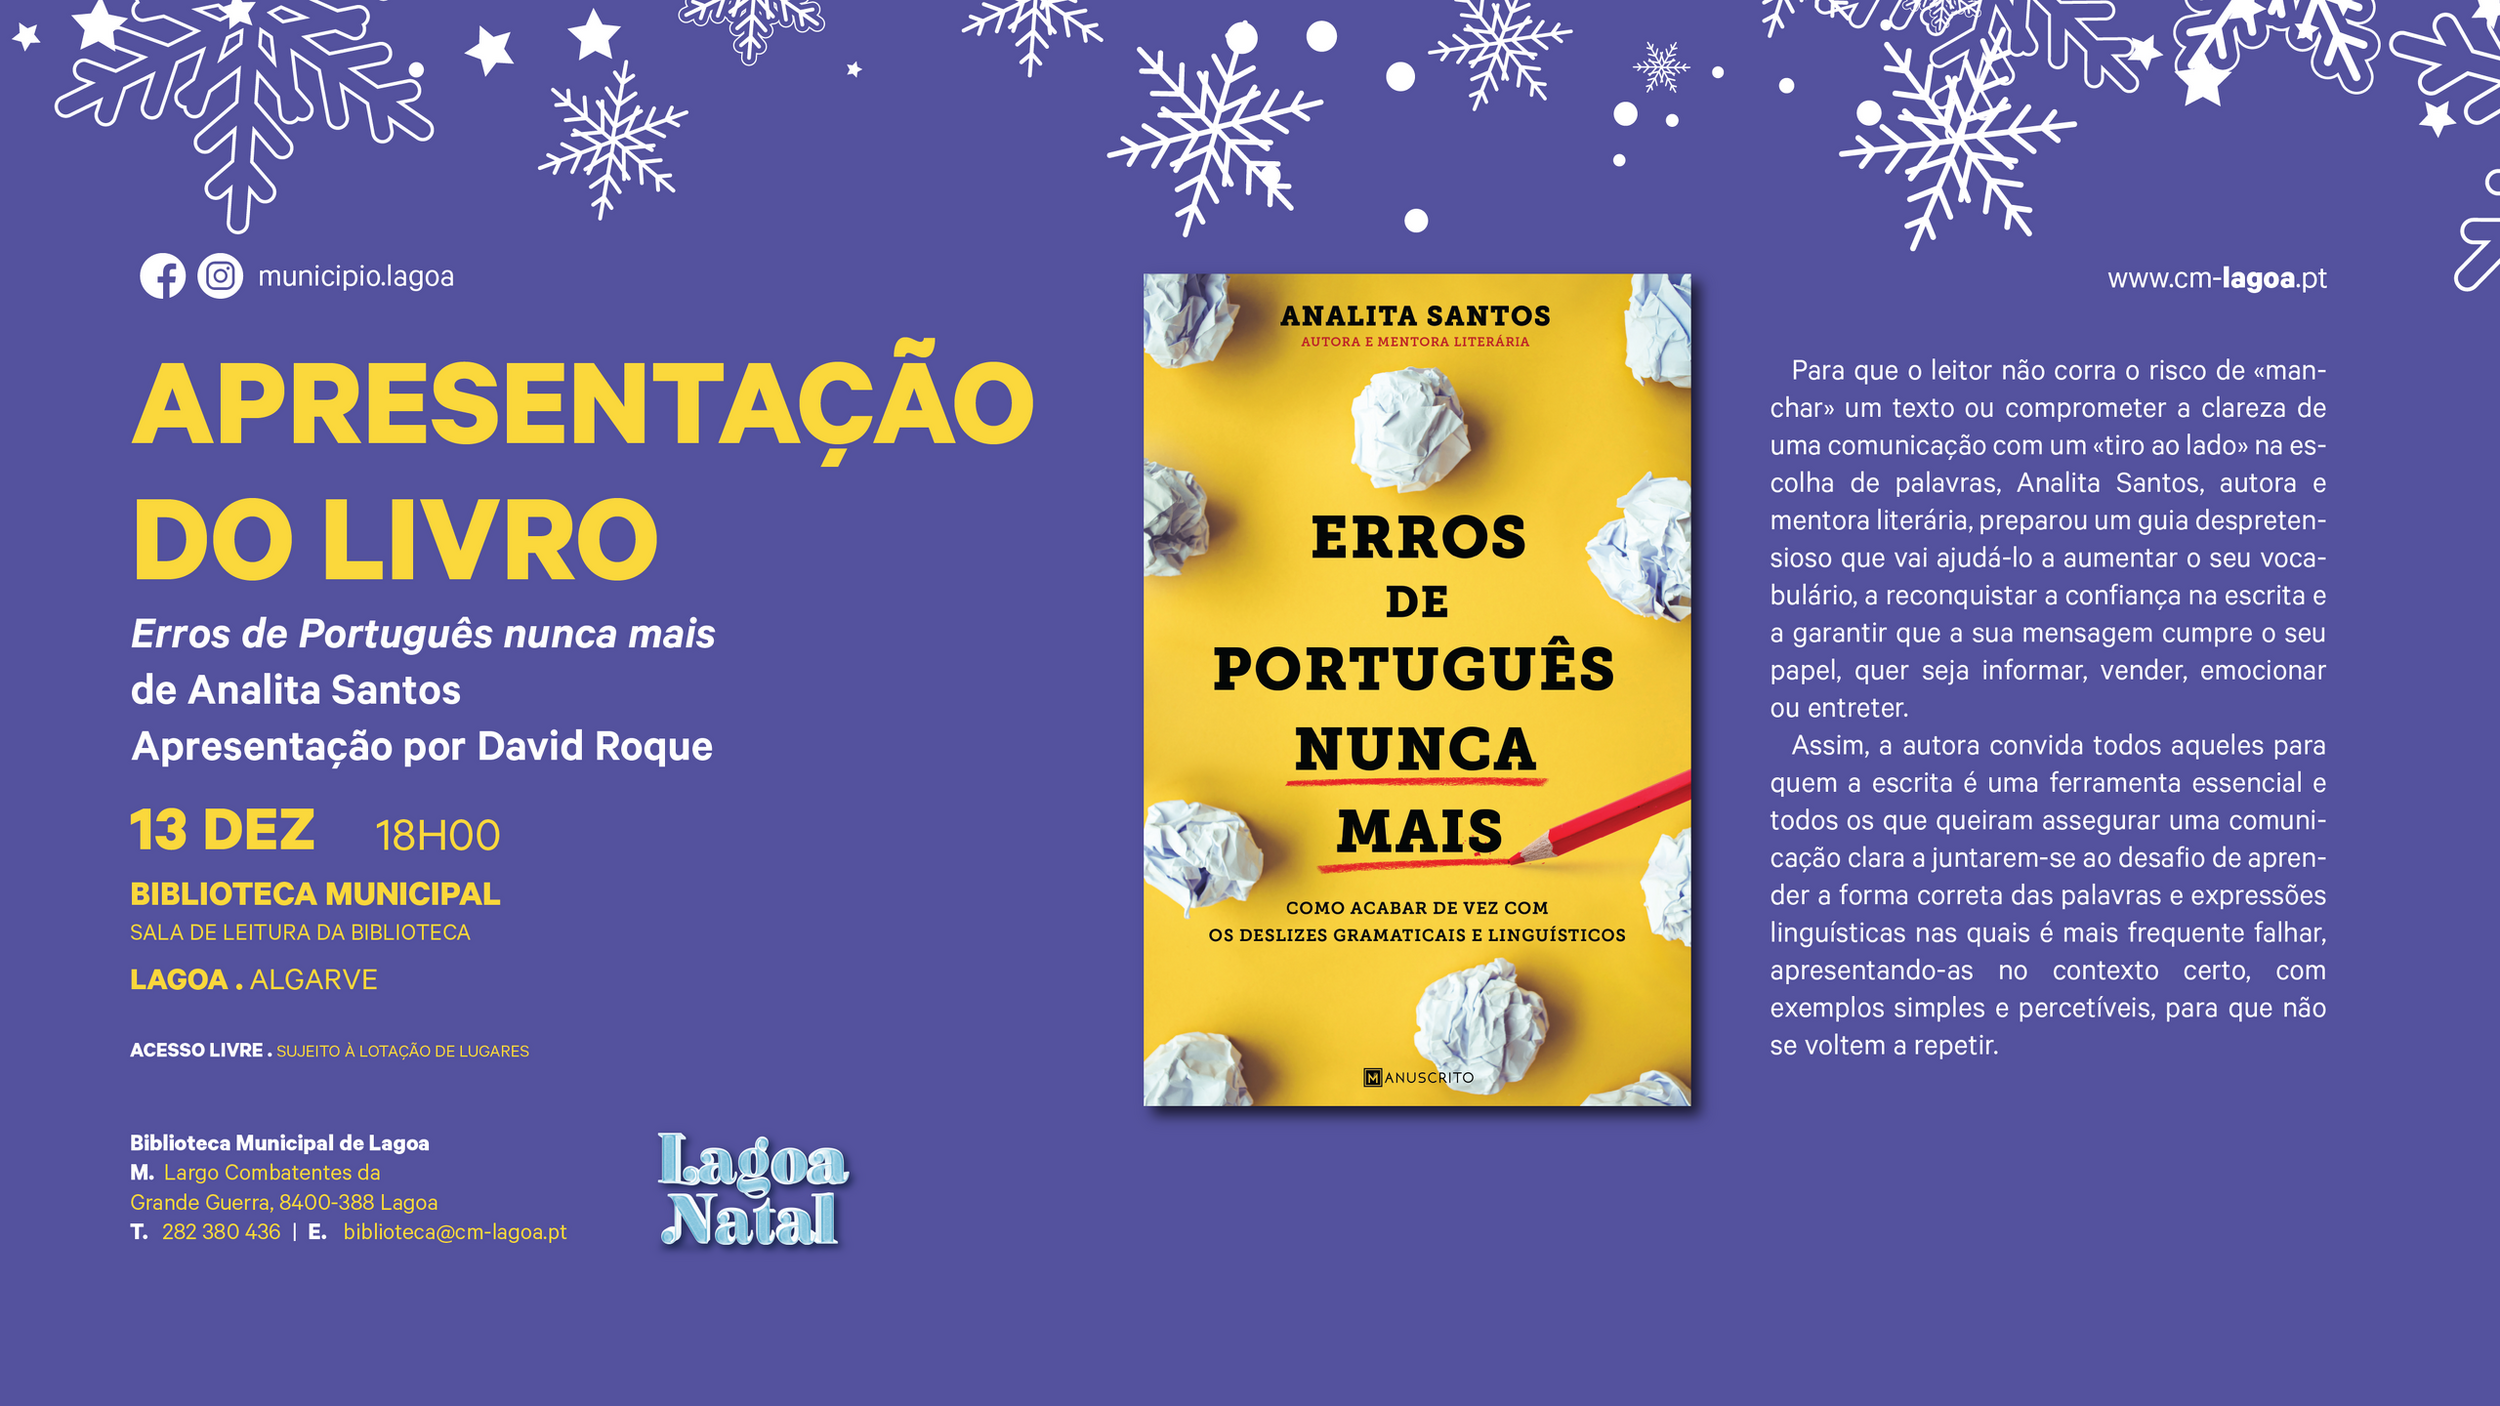 Apresentação do livro "Erros de Português nunca mais" de Analita Santos